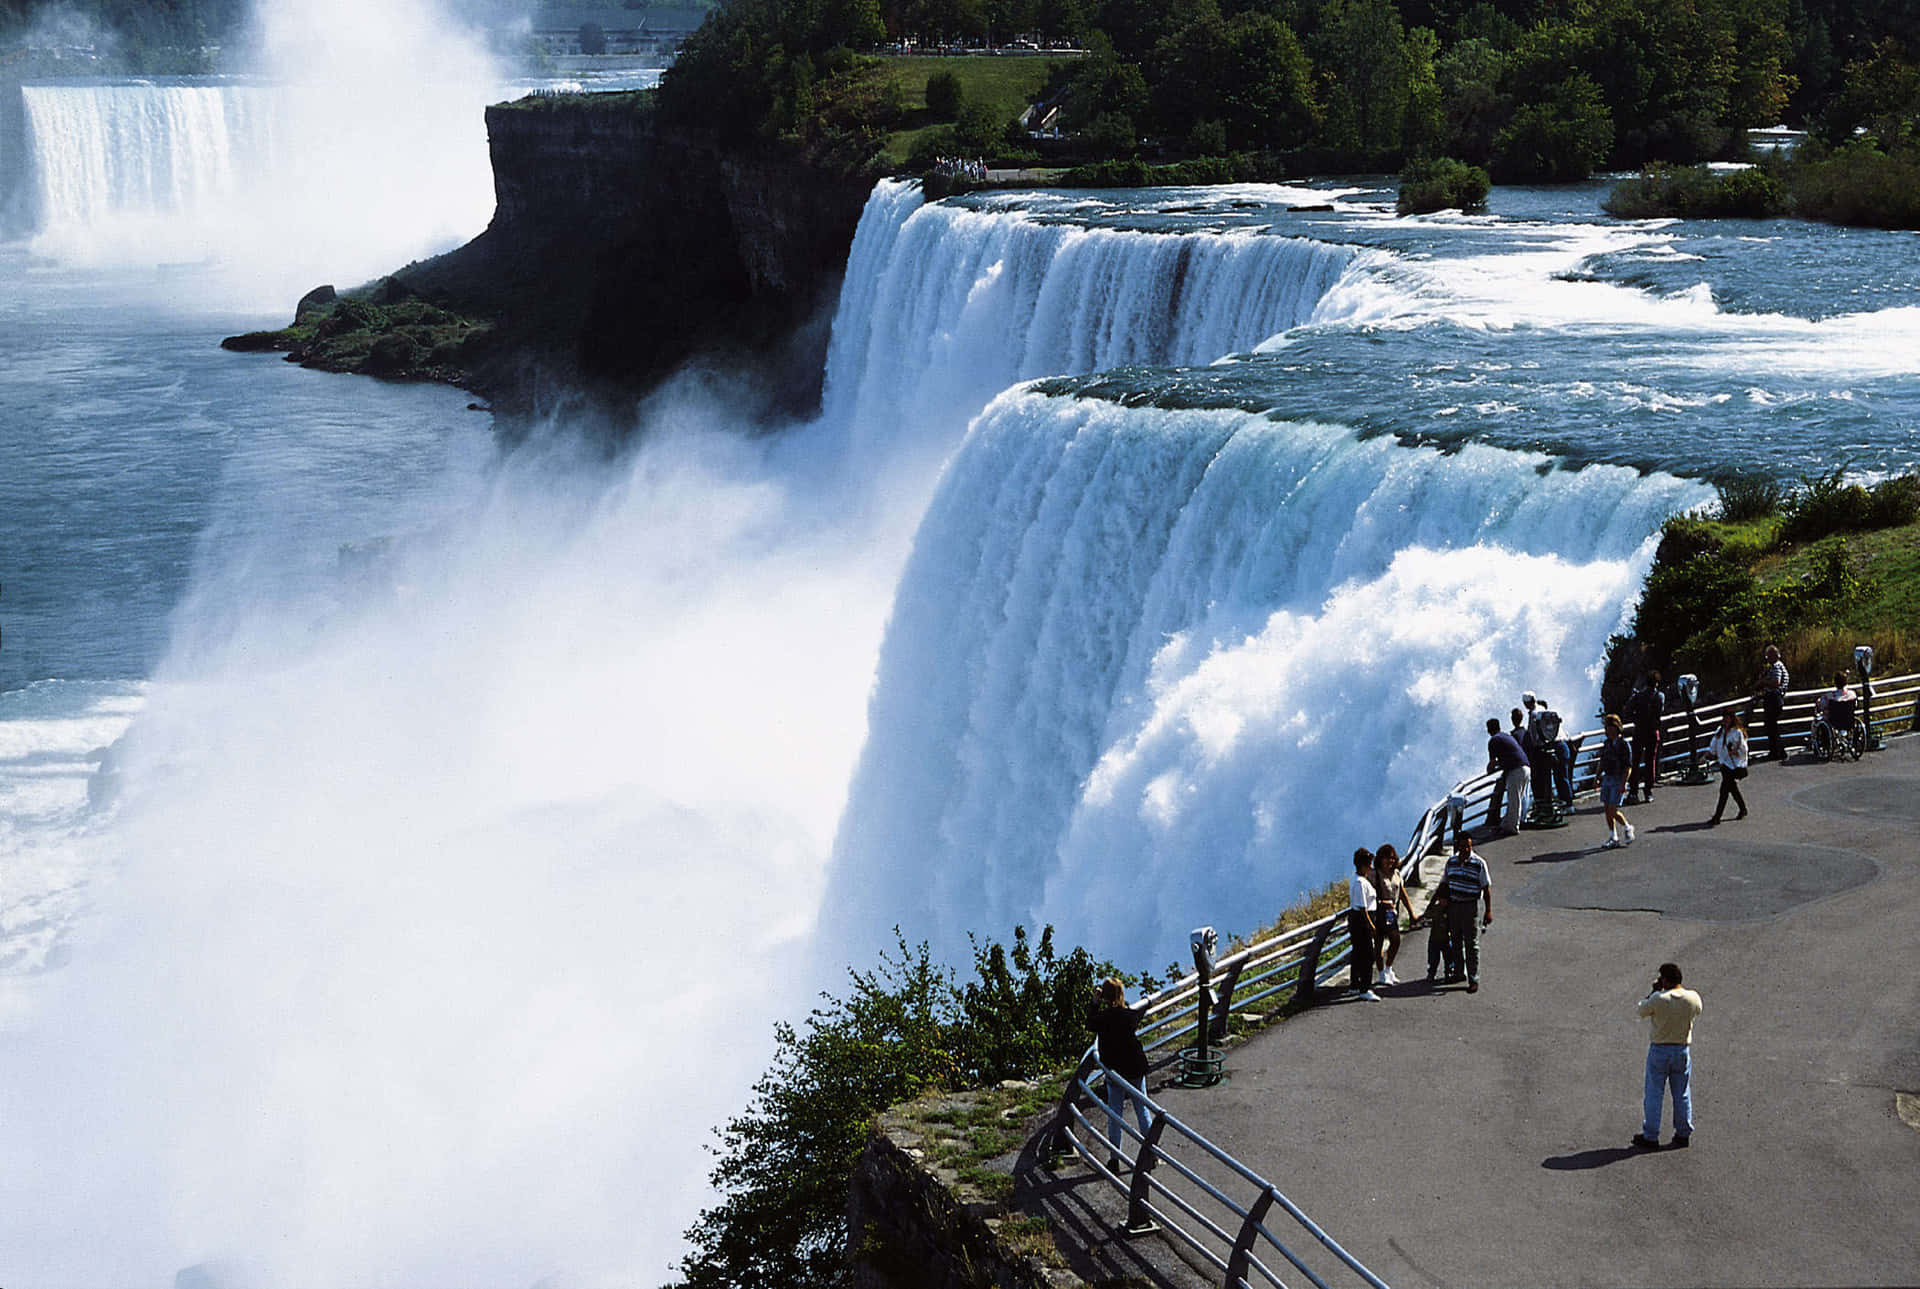 Enjoying the majestic beauty of Niagara Falls